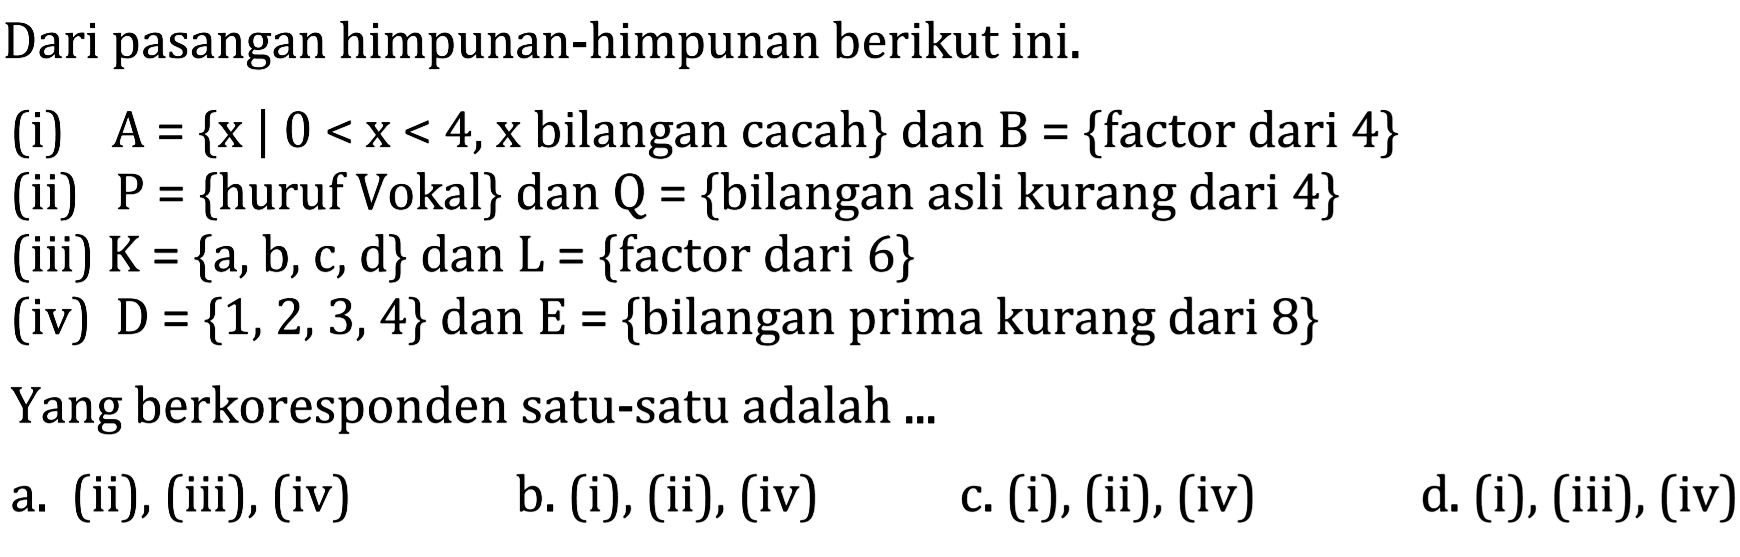 Dari pasangan himpunan-himpunan berikut ini. (i) A = {x | 0 < x < 4, x bilangan cacah} dan B = {factor dari 4} (ii) P = {huruf Vokal} dan Q = {bilangan asli kurang dari 4} (iii) K = {a, b, c ,d} dan L = {factor dari 6} (iv) D = {1,2,3,4} dan E = {bilangan prima kurang dari 8} Yang berkoresponden satu-satu adalah...